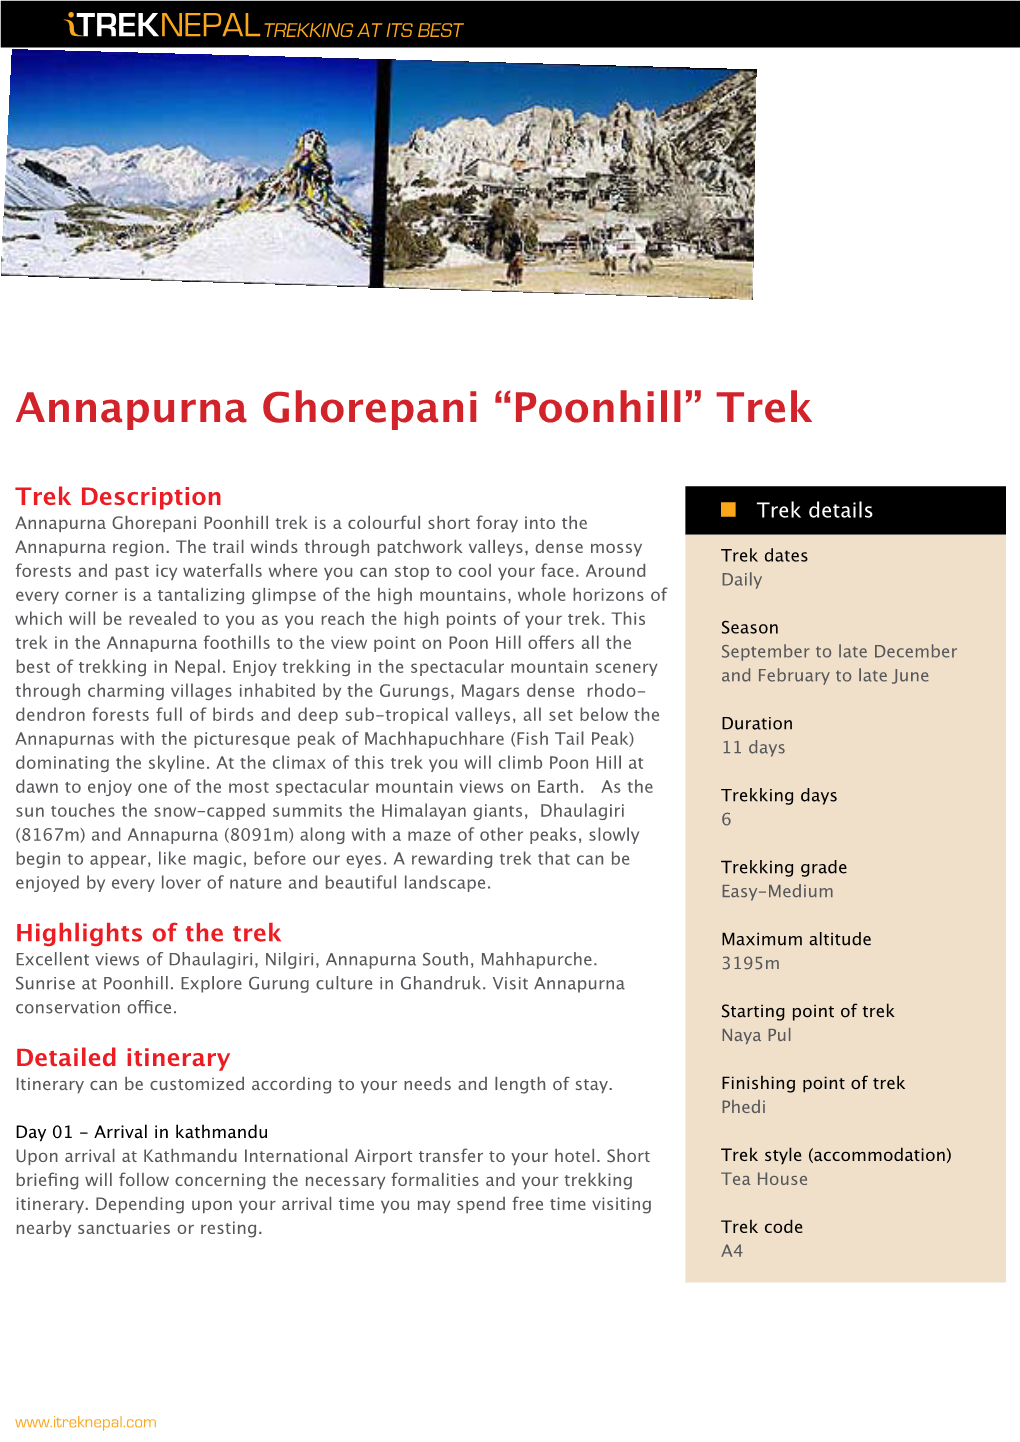 Annapurna Ghorepani “Poonhill” Trek